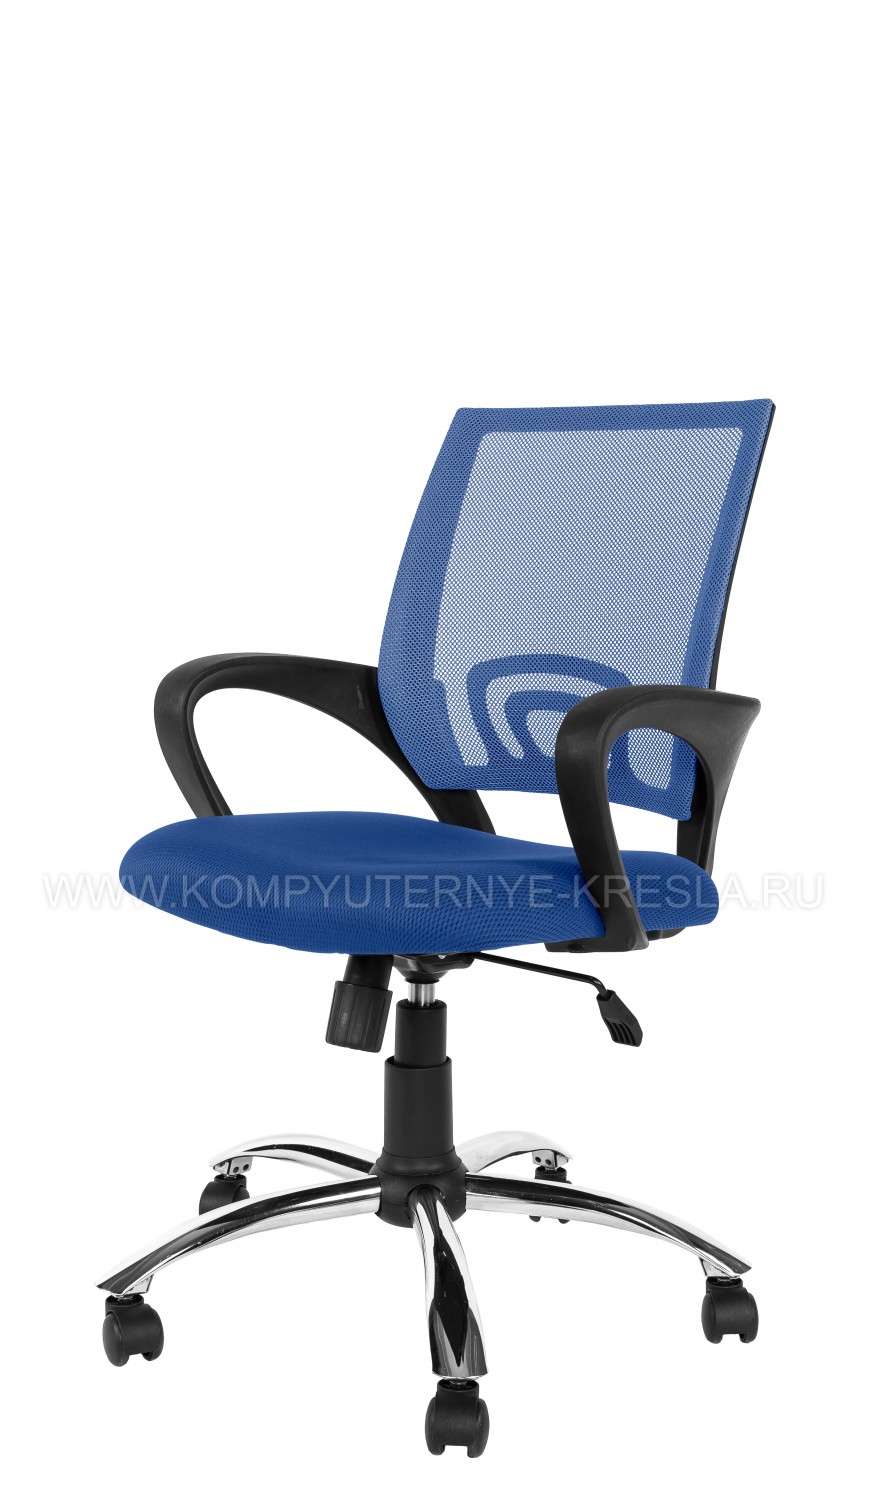 Компьютерное кресло КС 134-1 4